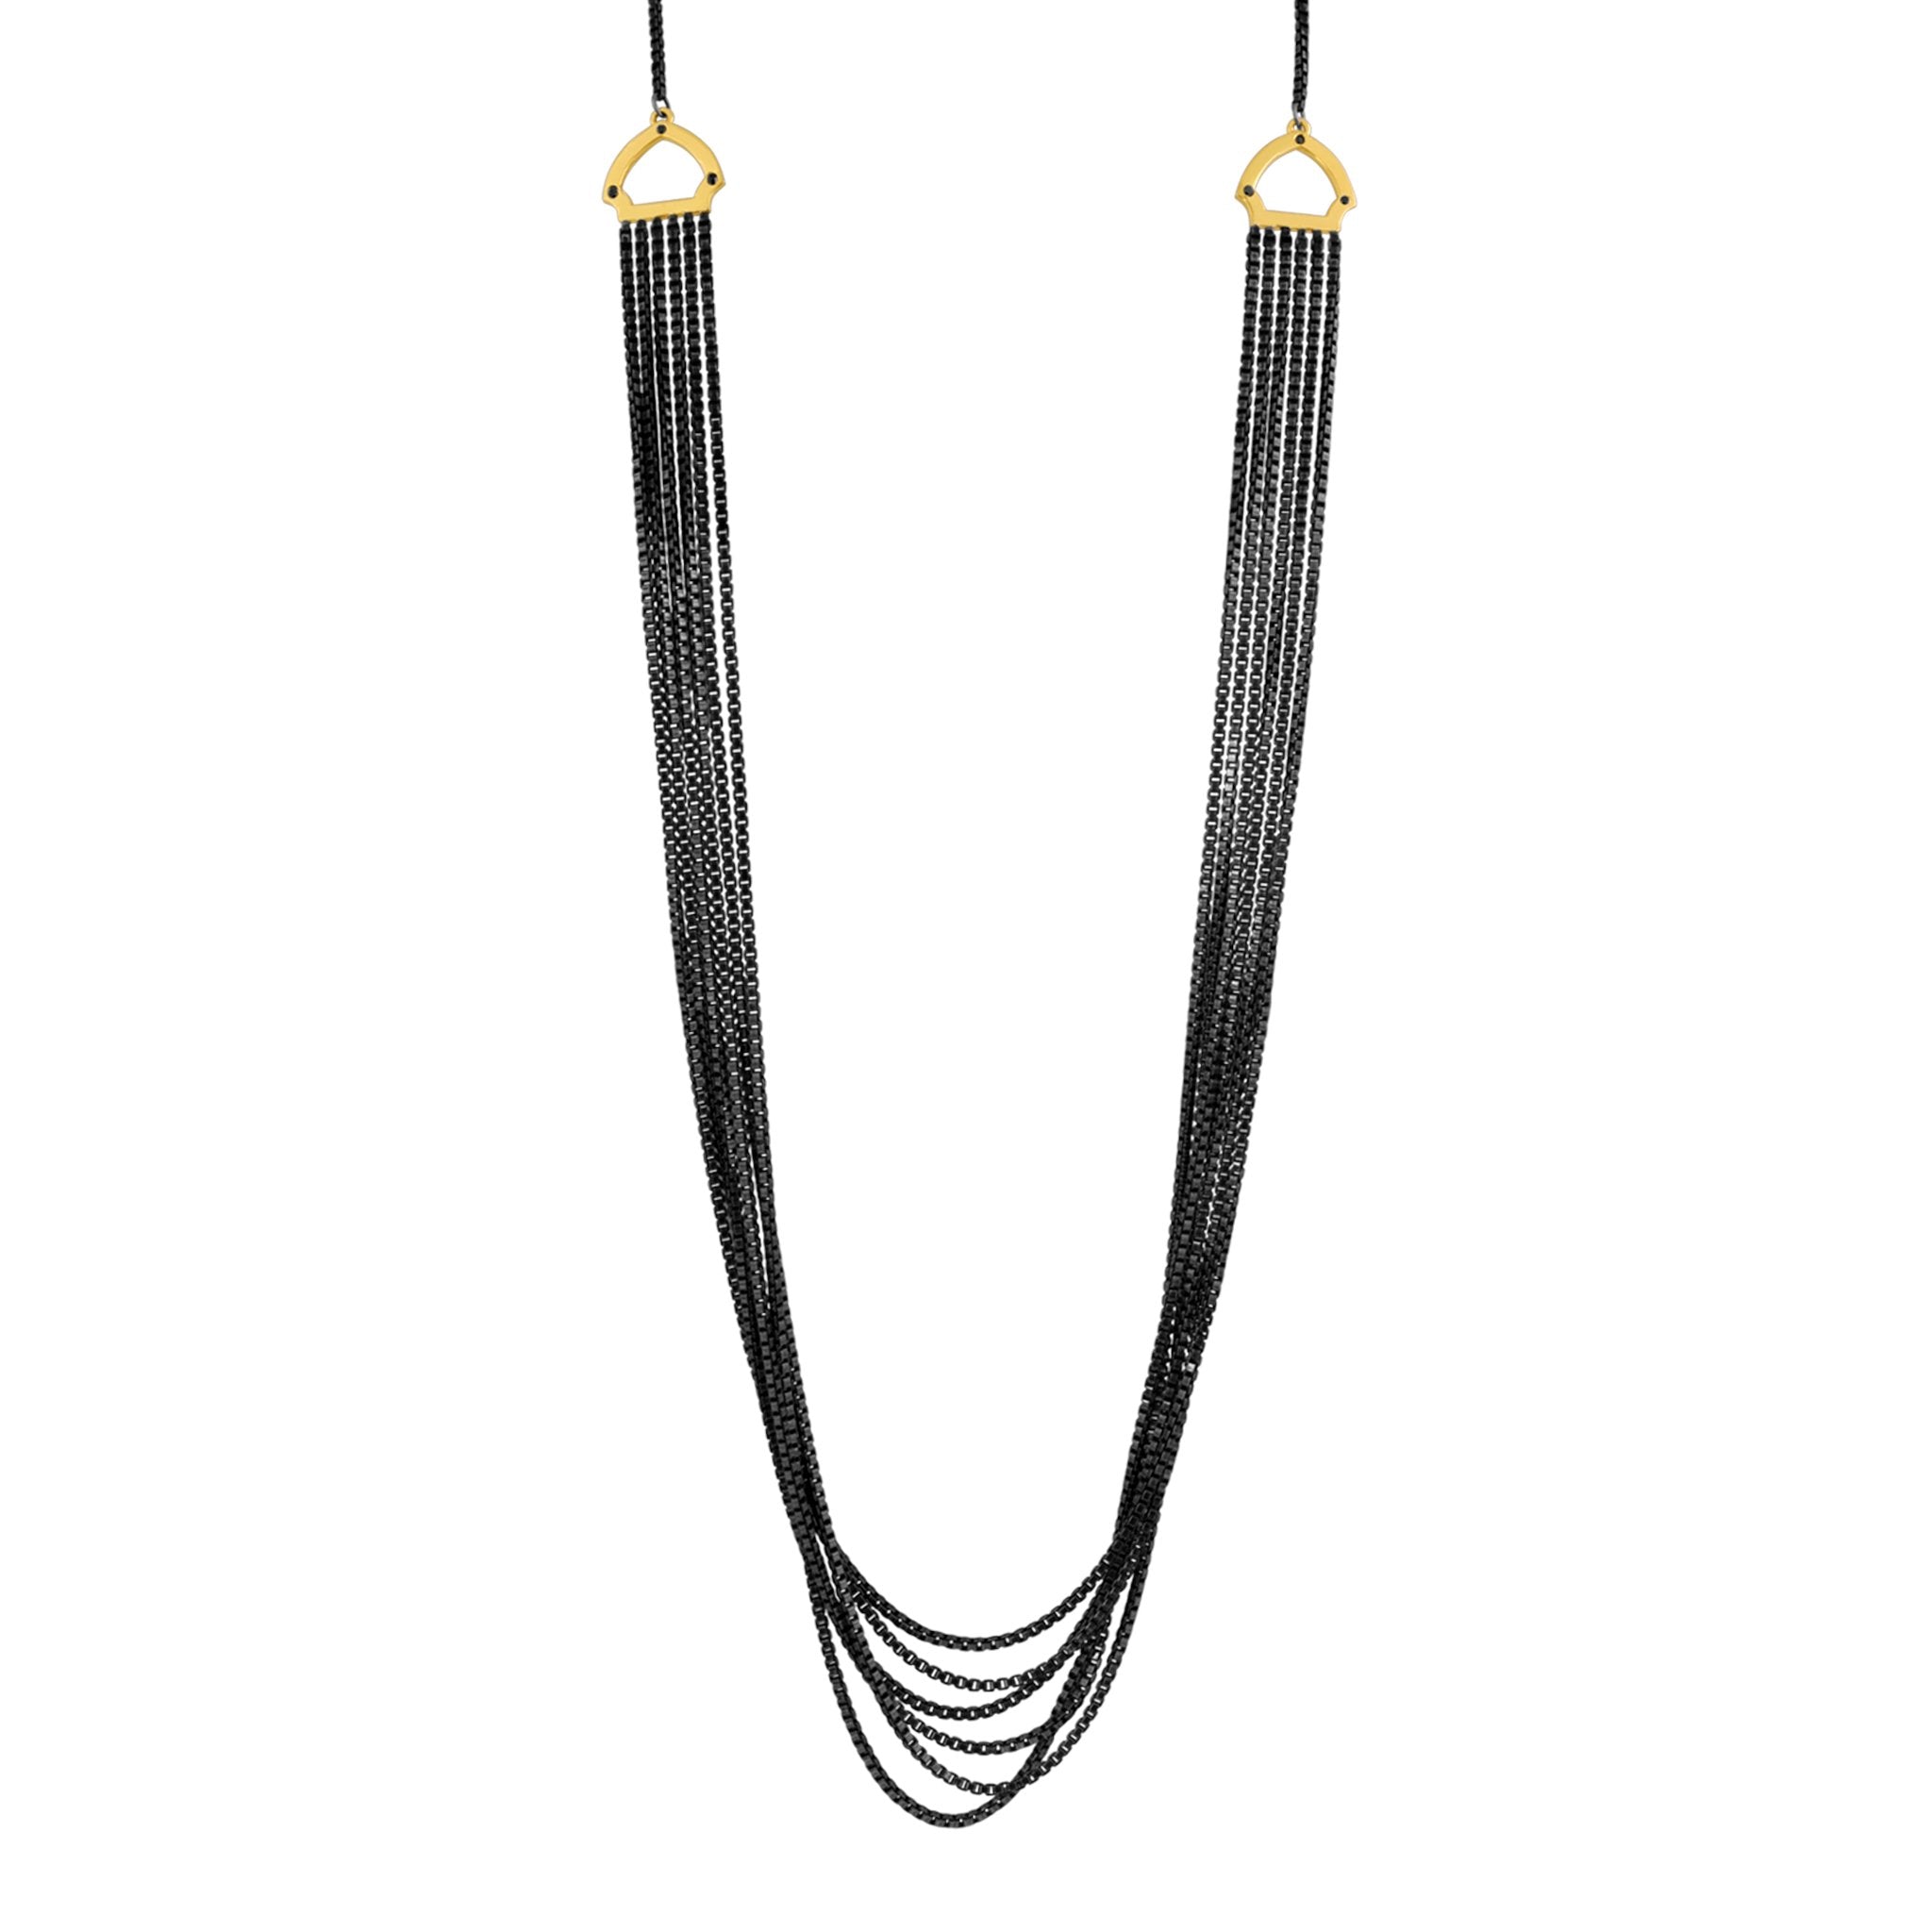 Hook Necklace: 14k Gold, Black Diamonds